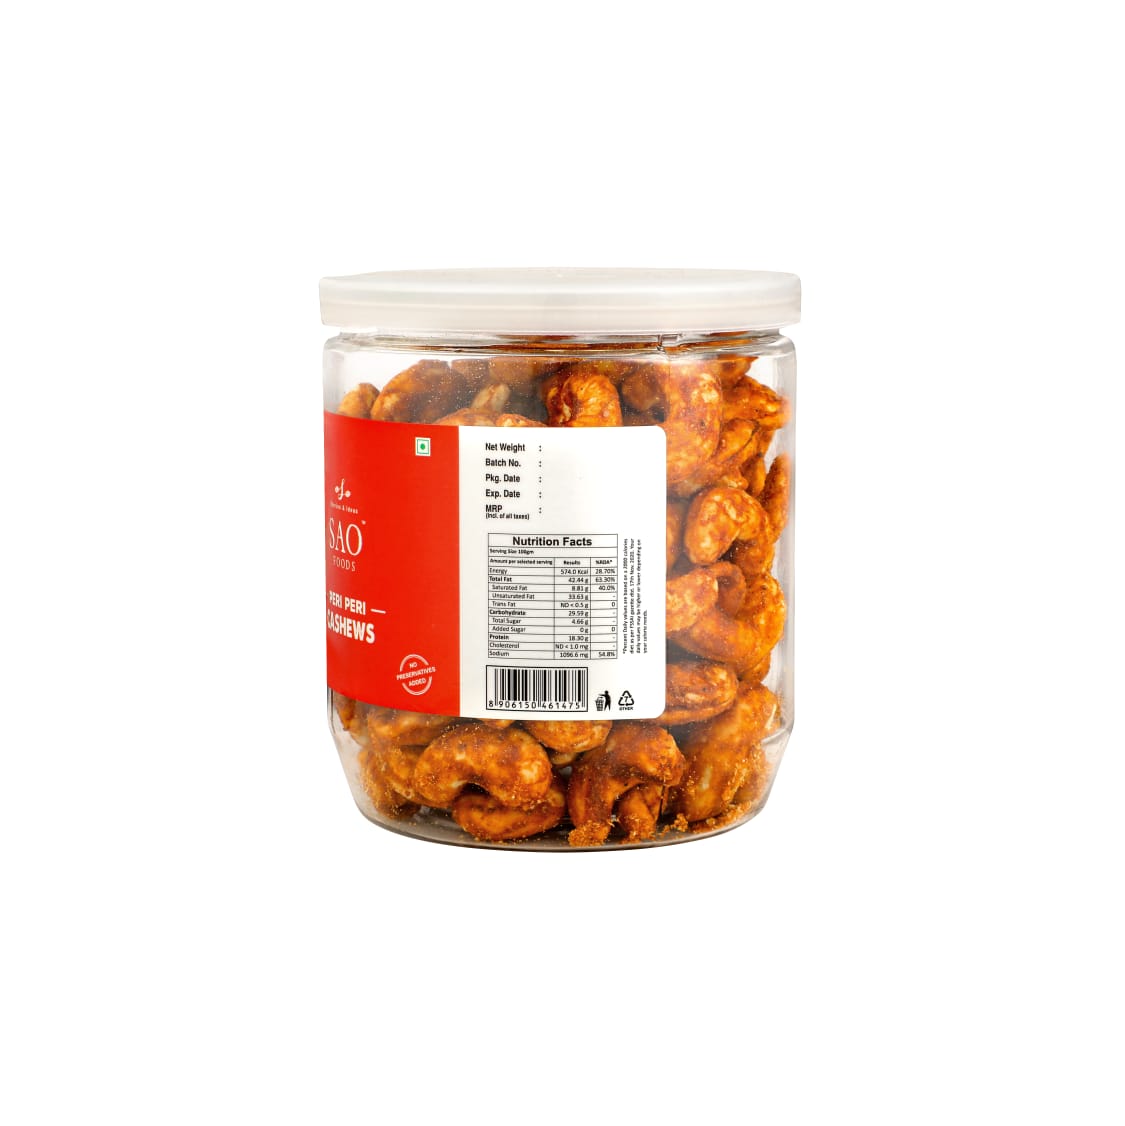 SAO FOODS Peri Peri Roasted Cashews 250 gm | PET Jar With Tin Cap